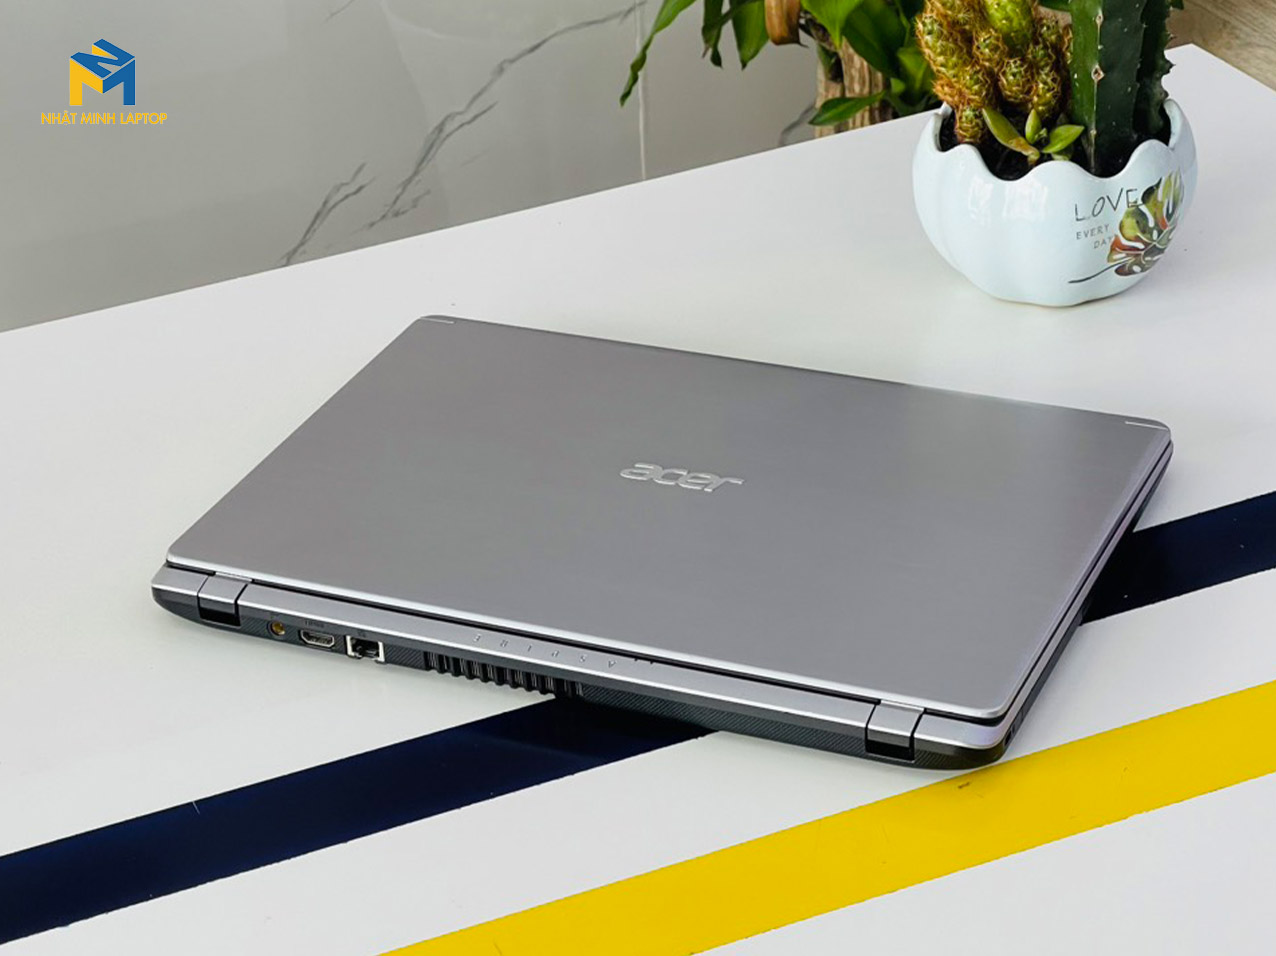 Acer Aspire A515-53G i5-8265U 8G 256G Nvidia MX130 15.6" FHD